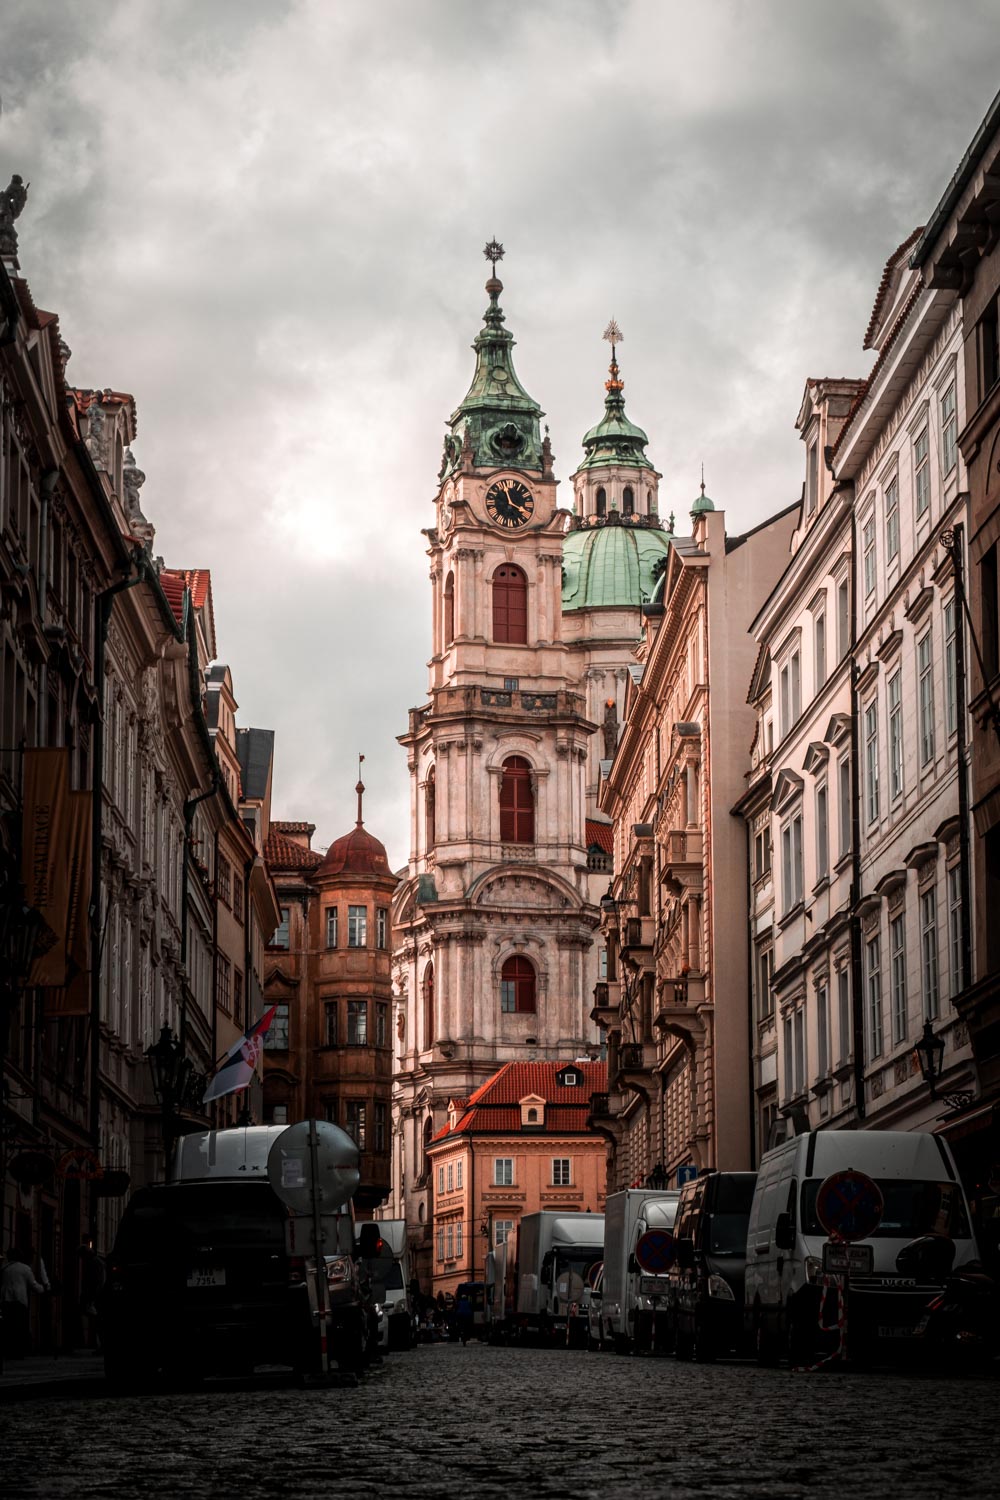 Eerie Architecture – St. Nicholas Church Prague, Czech Republic, 2020